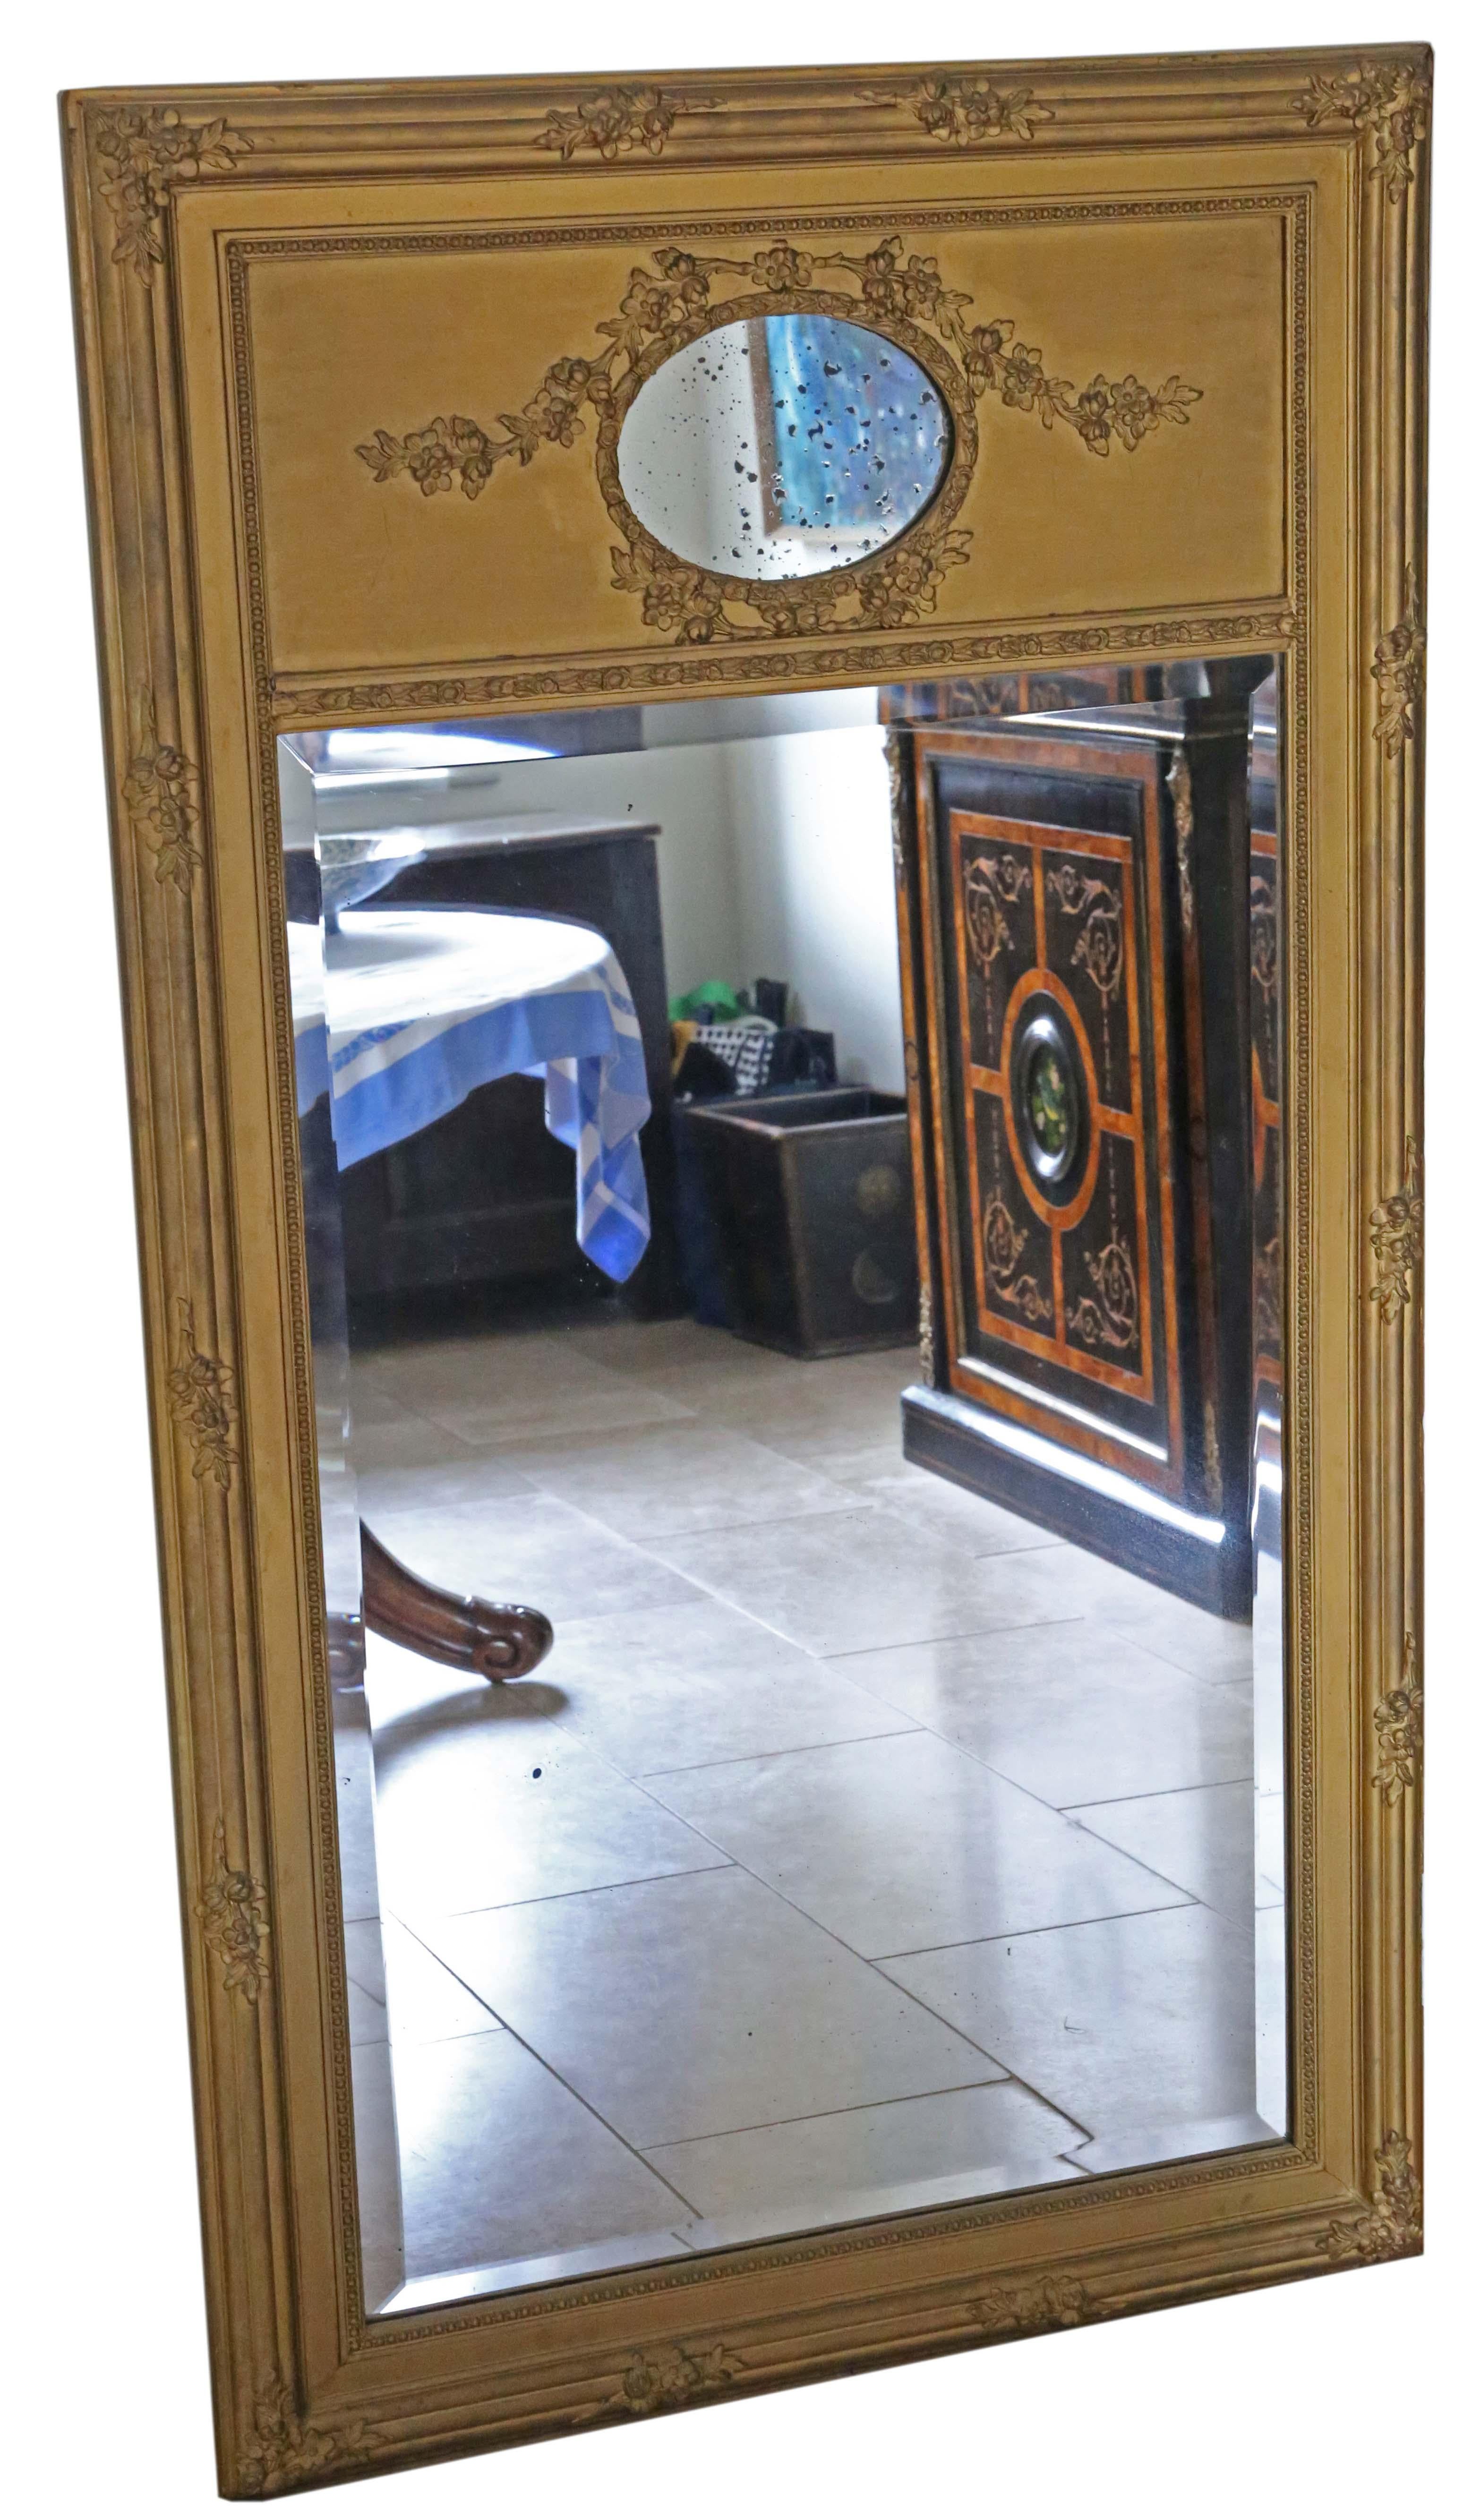 Miroir trumeau ancien de grande qualité, datant de 1900, à poser sur le sol et à poser sur le mur.

Il n'y a pas de joints lâches ni de ver à bois.

Le verre miroir principal d'origine à bord biseauté présente une légère oxydation, quelques ombres